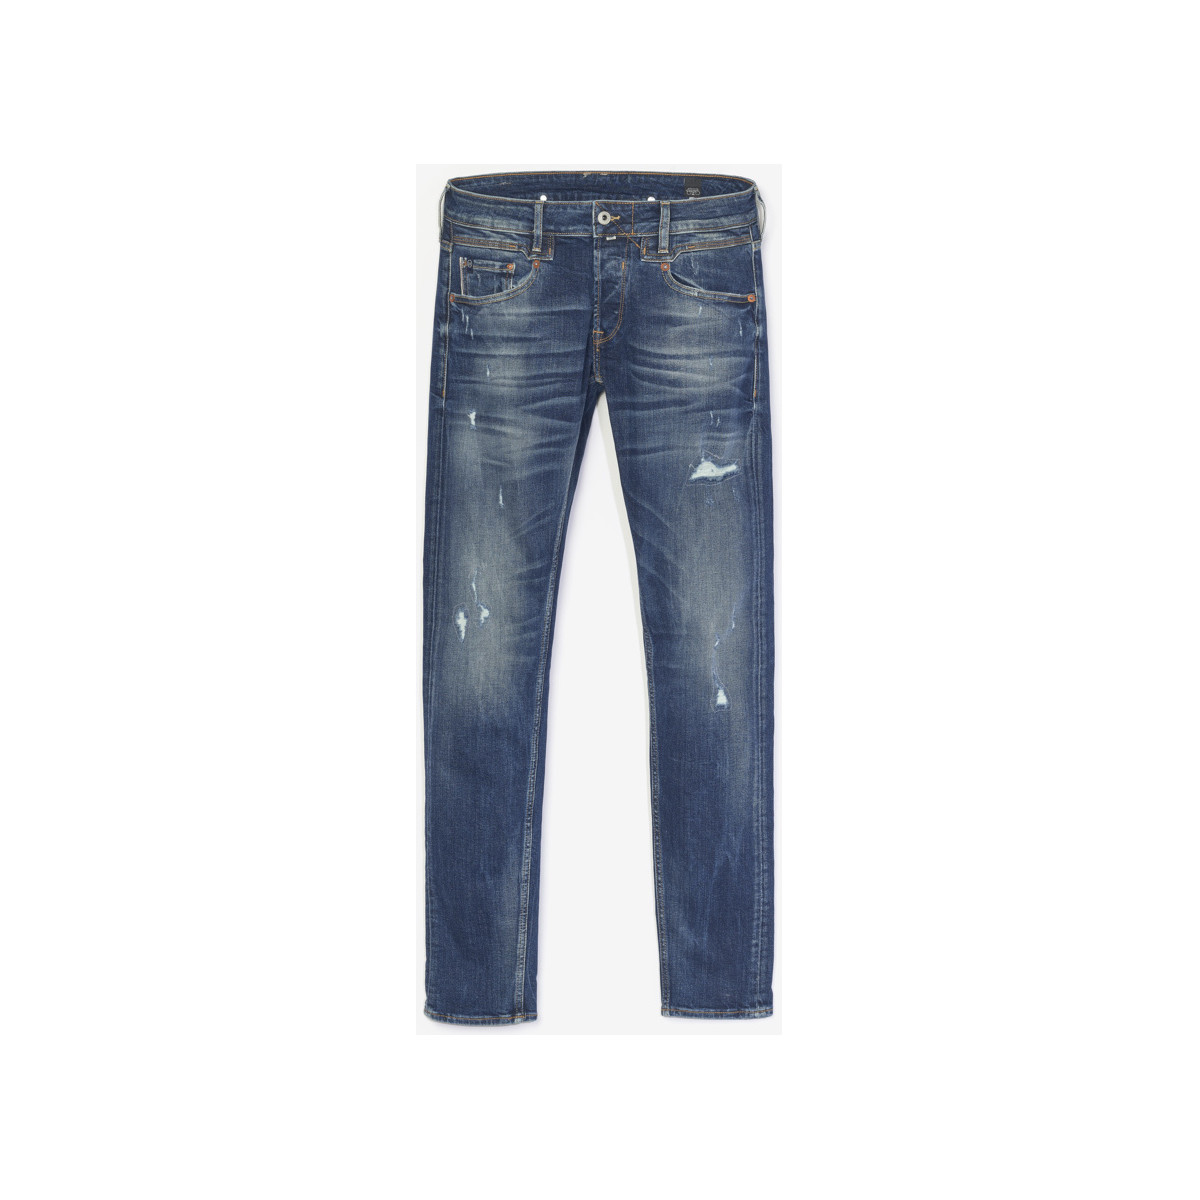 Le Temps des Cerises Bleu Trial 700/11 adjusted jeans d